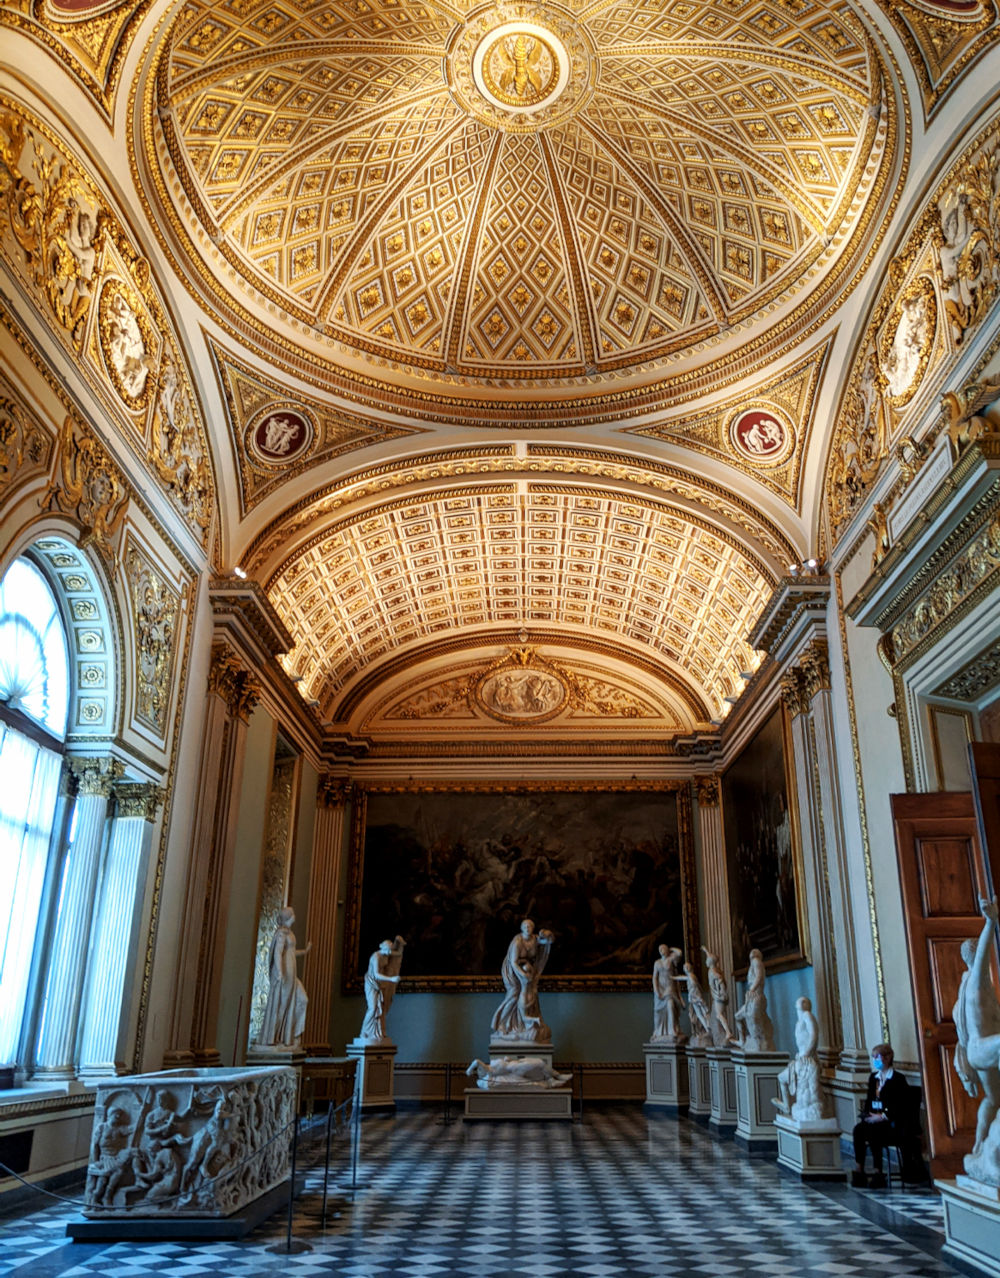 Explore the Uffizi Gallery